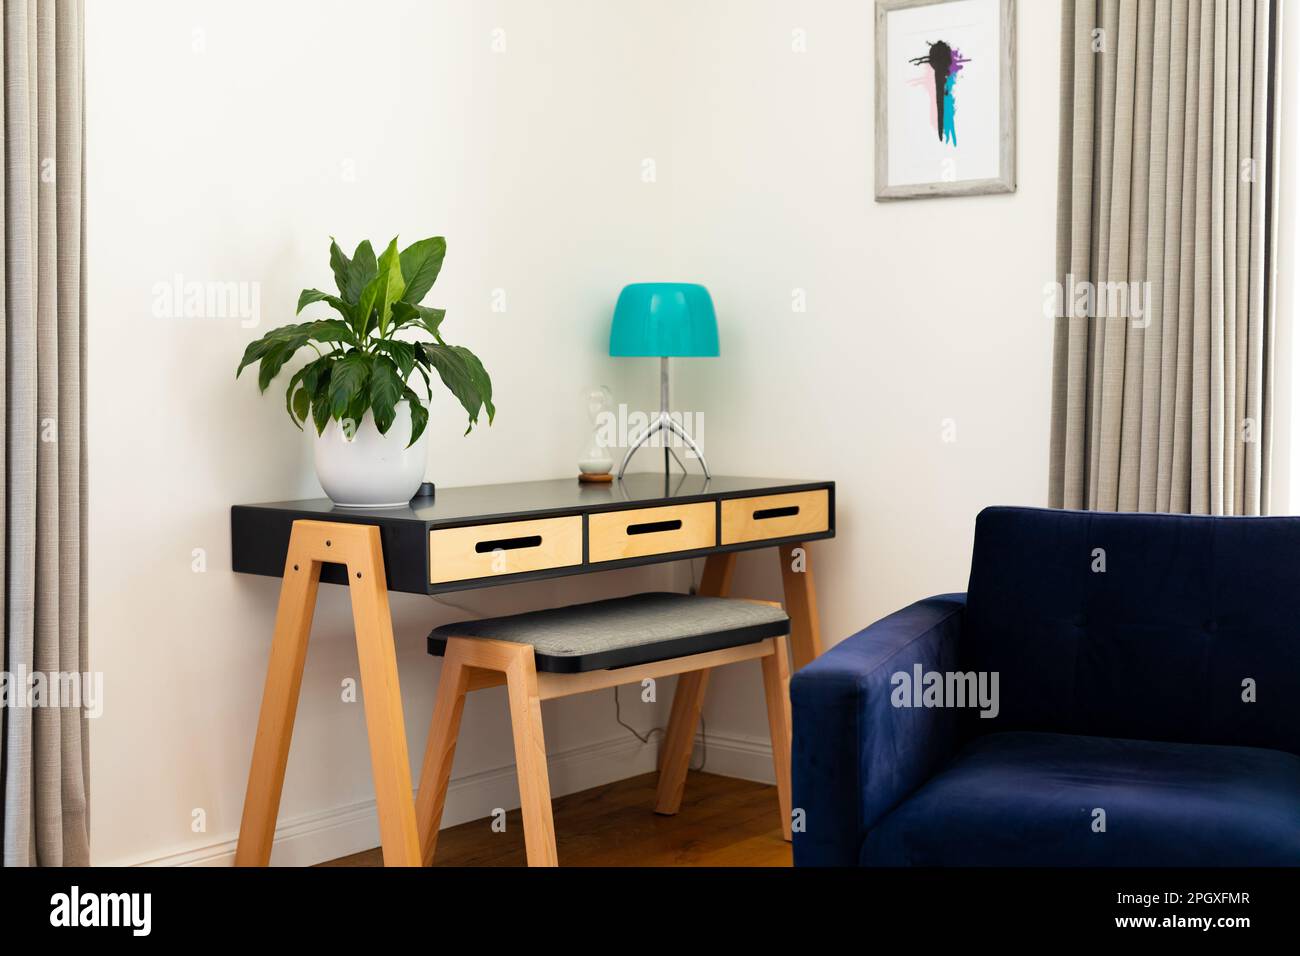 Wohnzimmerecke mit Sessel, Pflanze und Lampe auf Tisch, Vorhängen und Wandgemälden Stockfoto